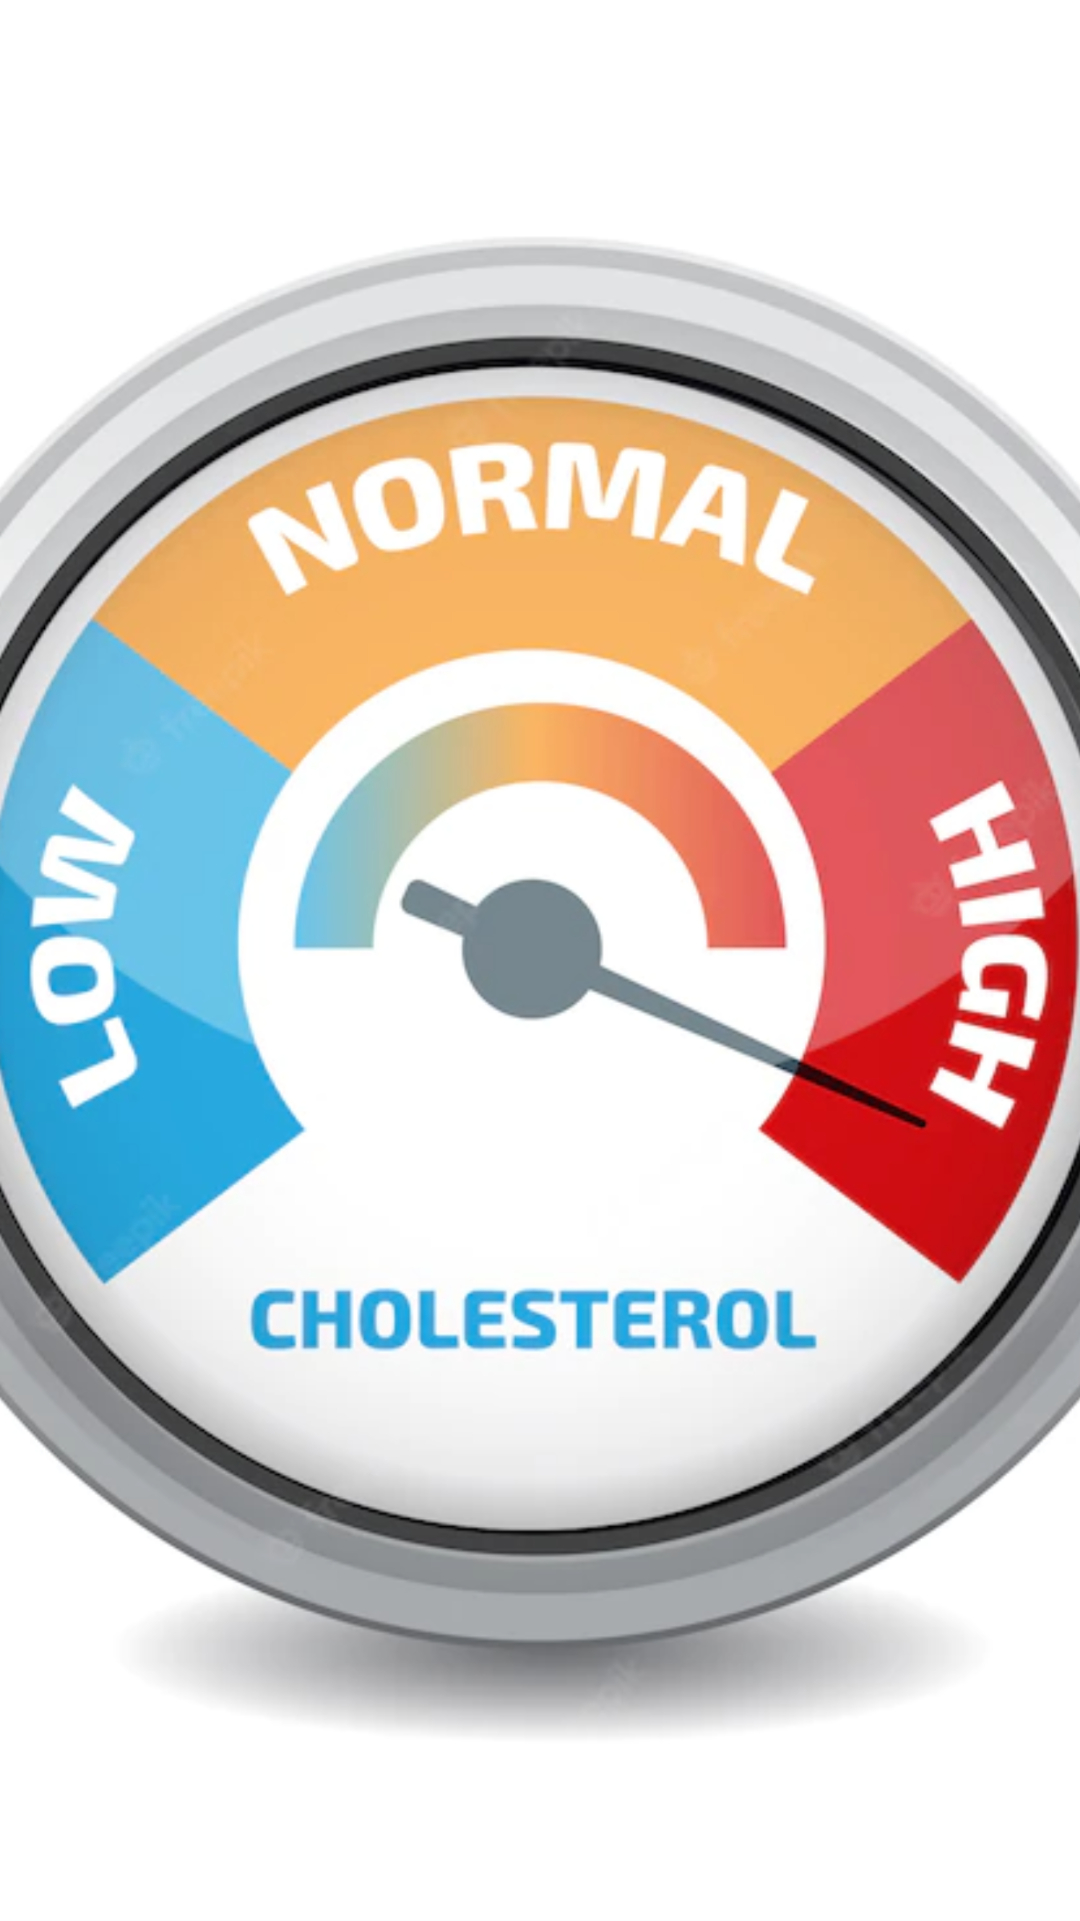 High Cholesterol: हाई कोलेस्ट्रॉल कम करने के तरीके